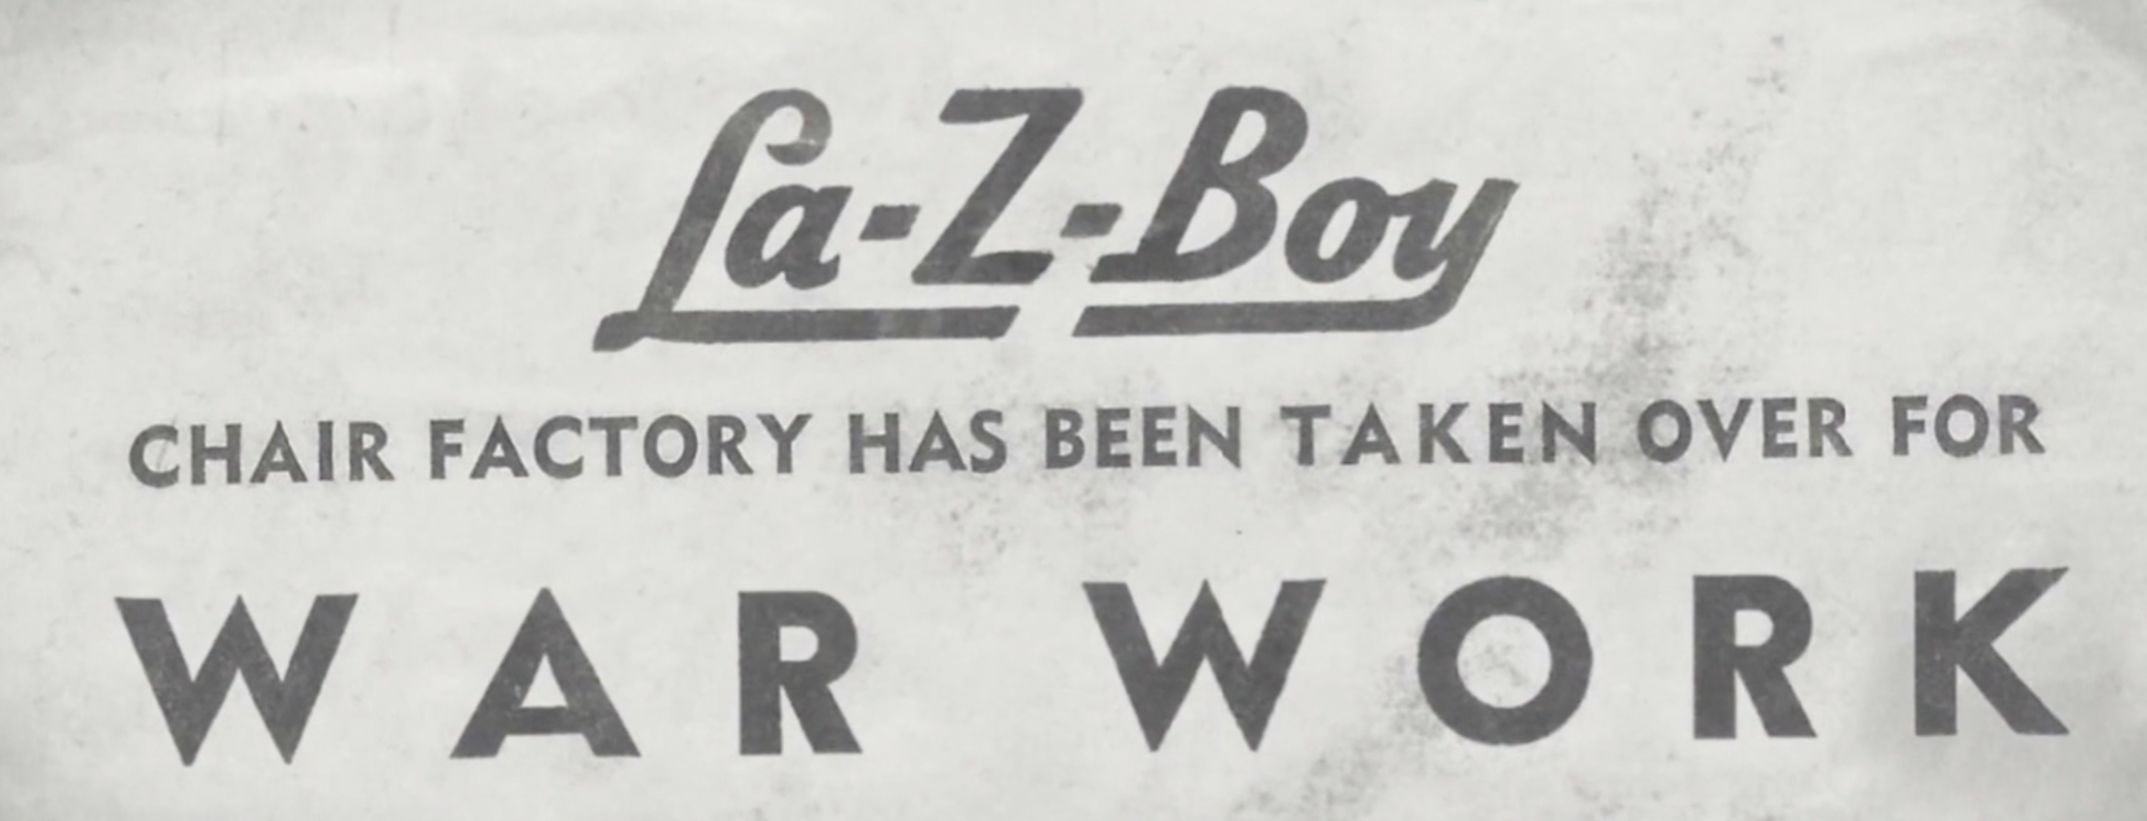 La-Z-Boy History